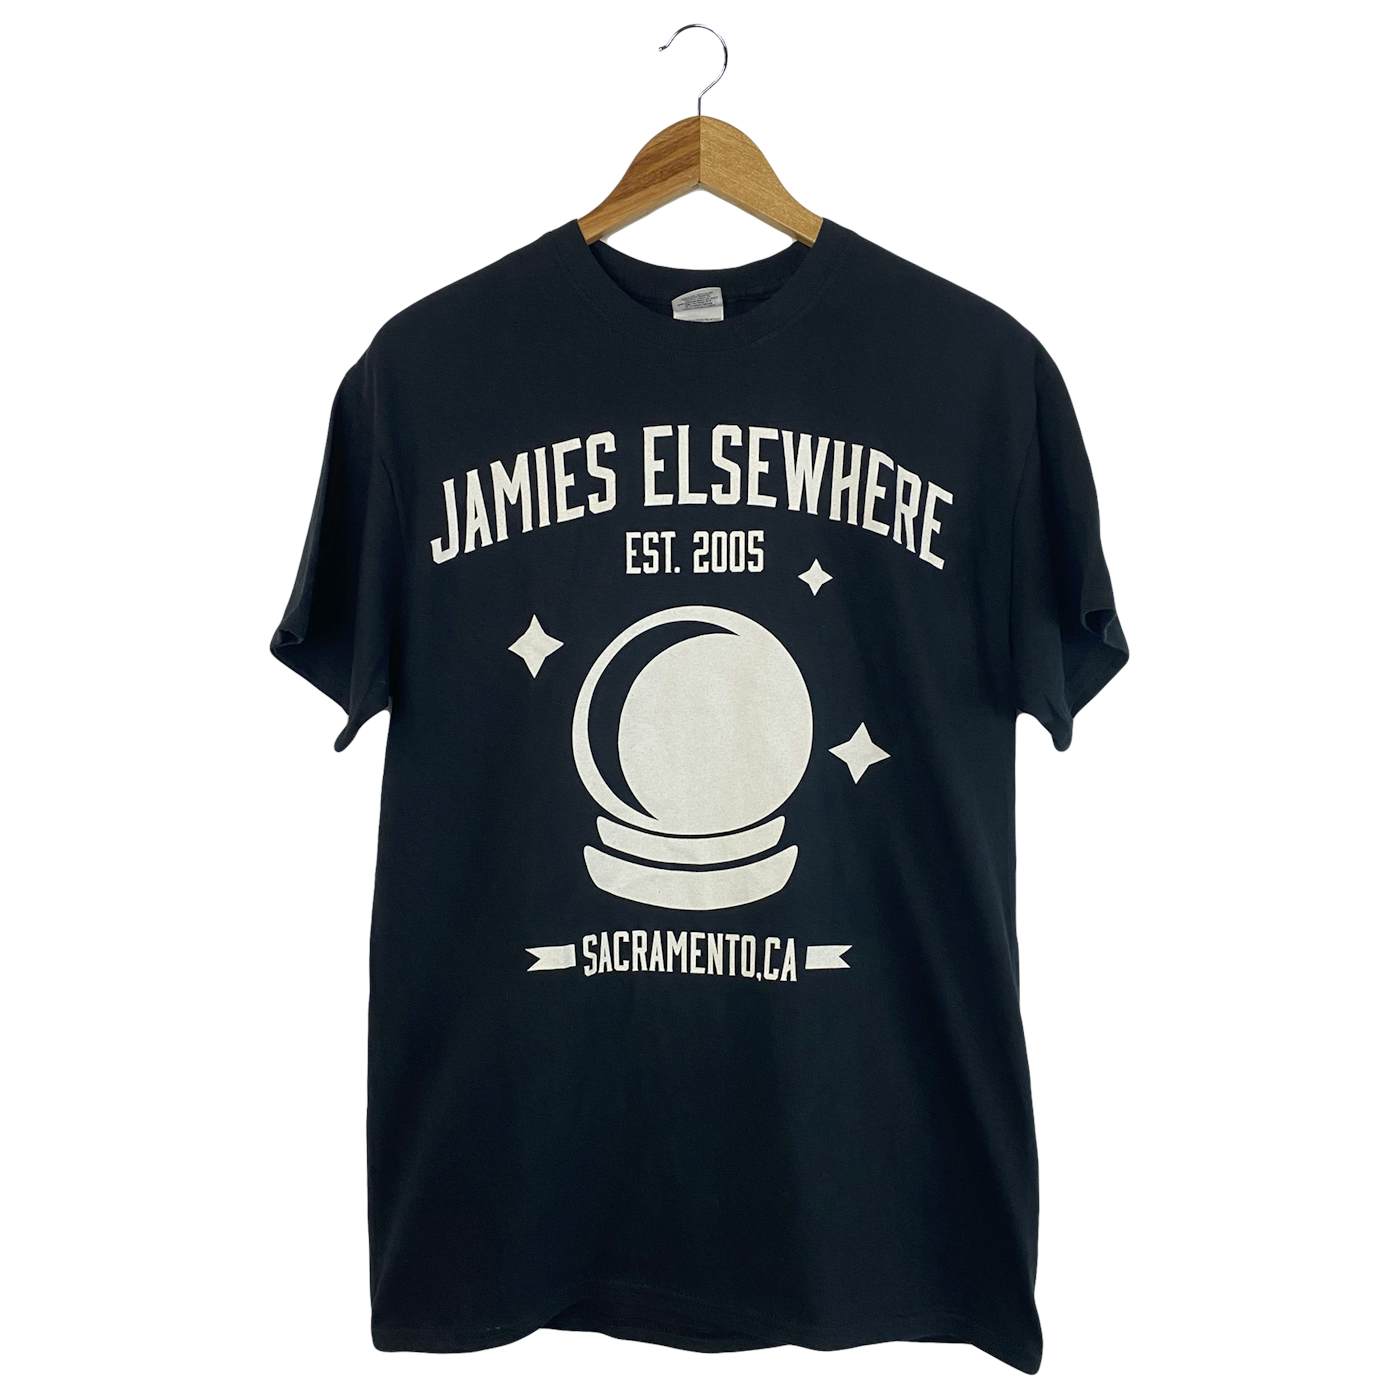 Jamie's Elsewhere